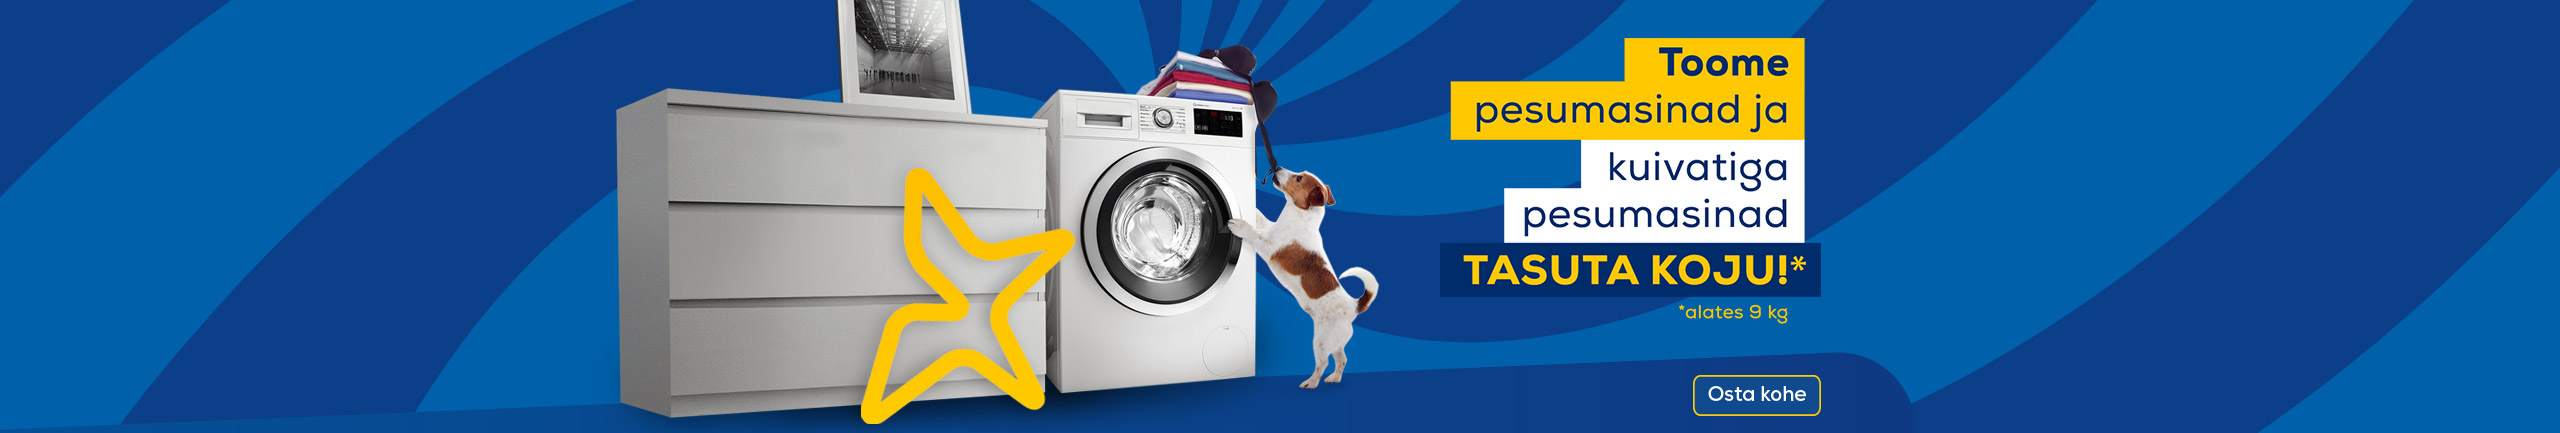 Toome valitud pesumasinad ja kuivatiga pesumasinad tasuta koju!